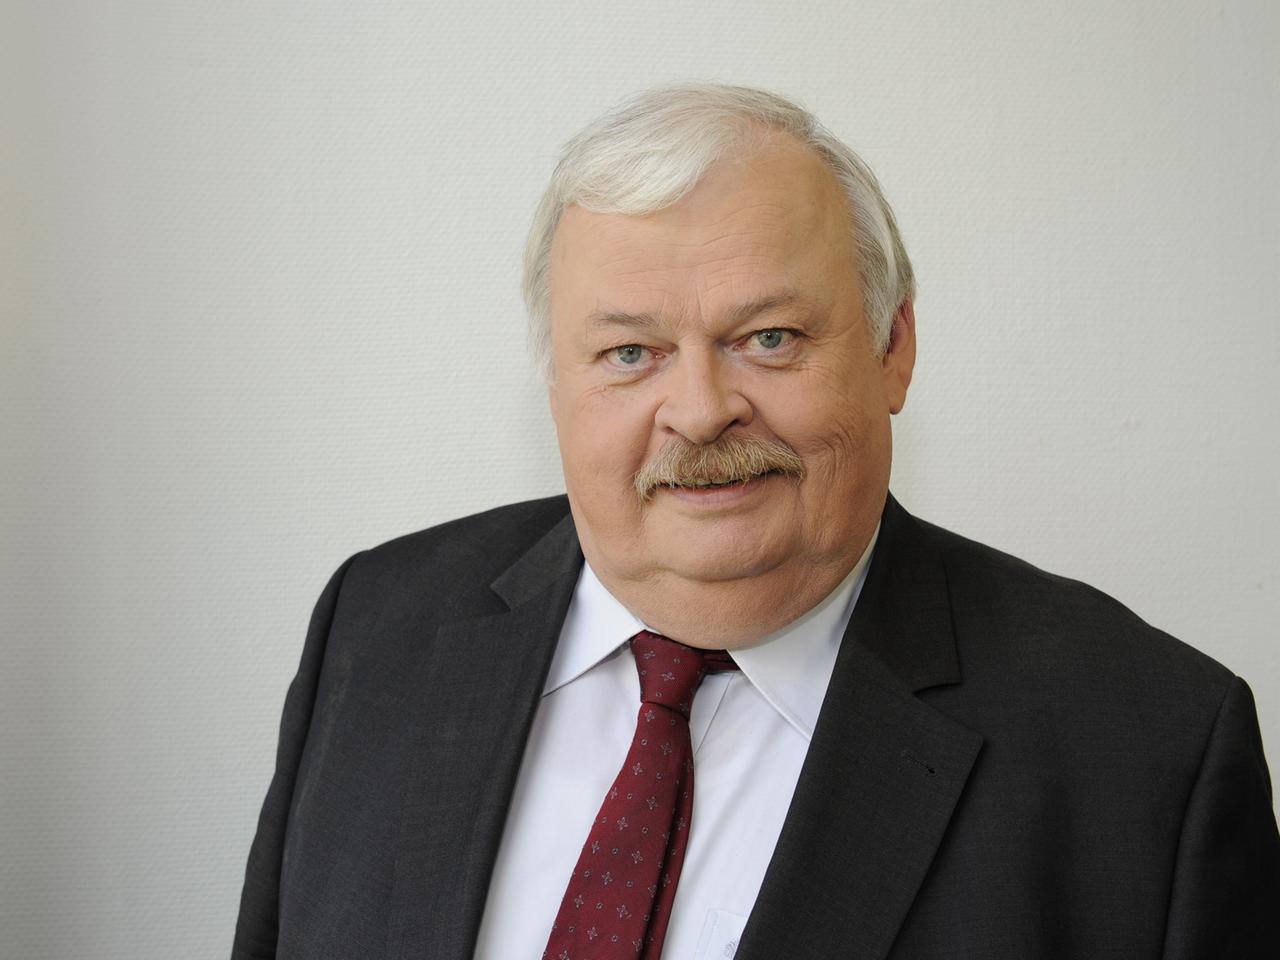 Guntram Schneider (SPD)